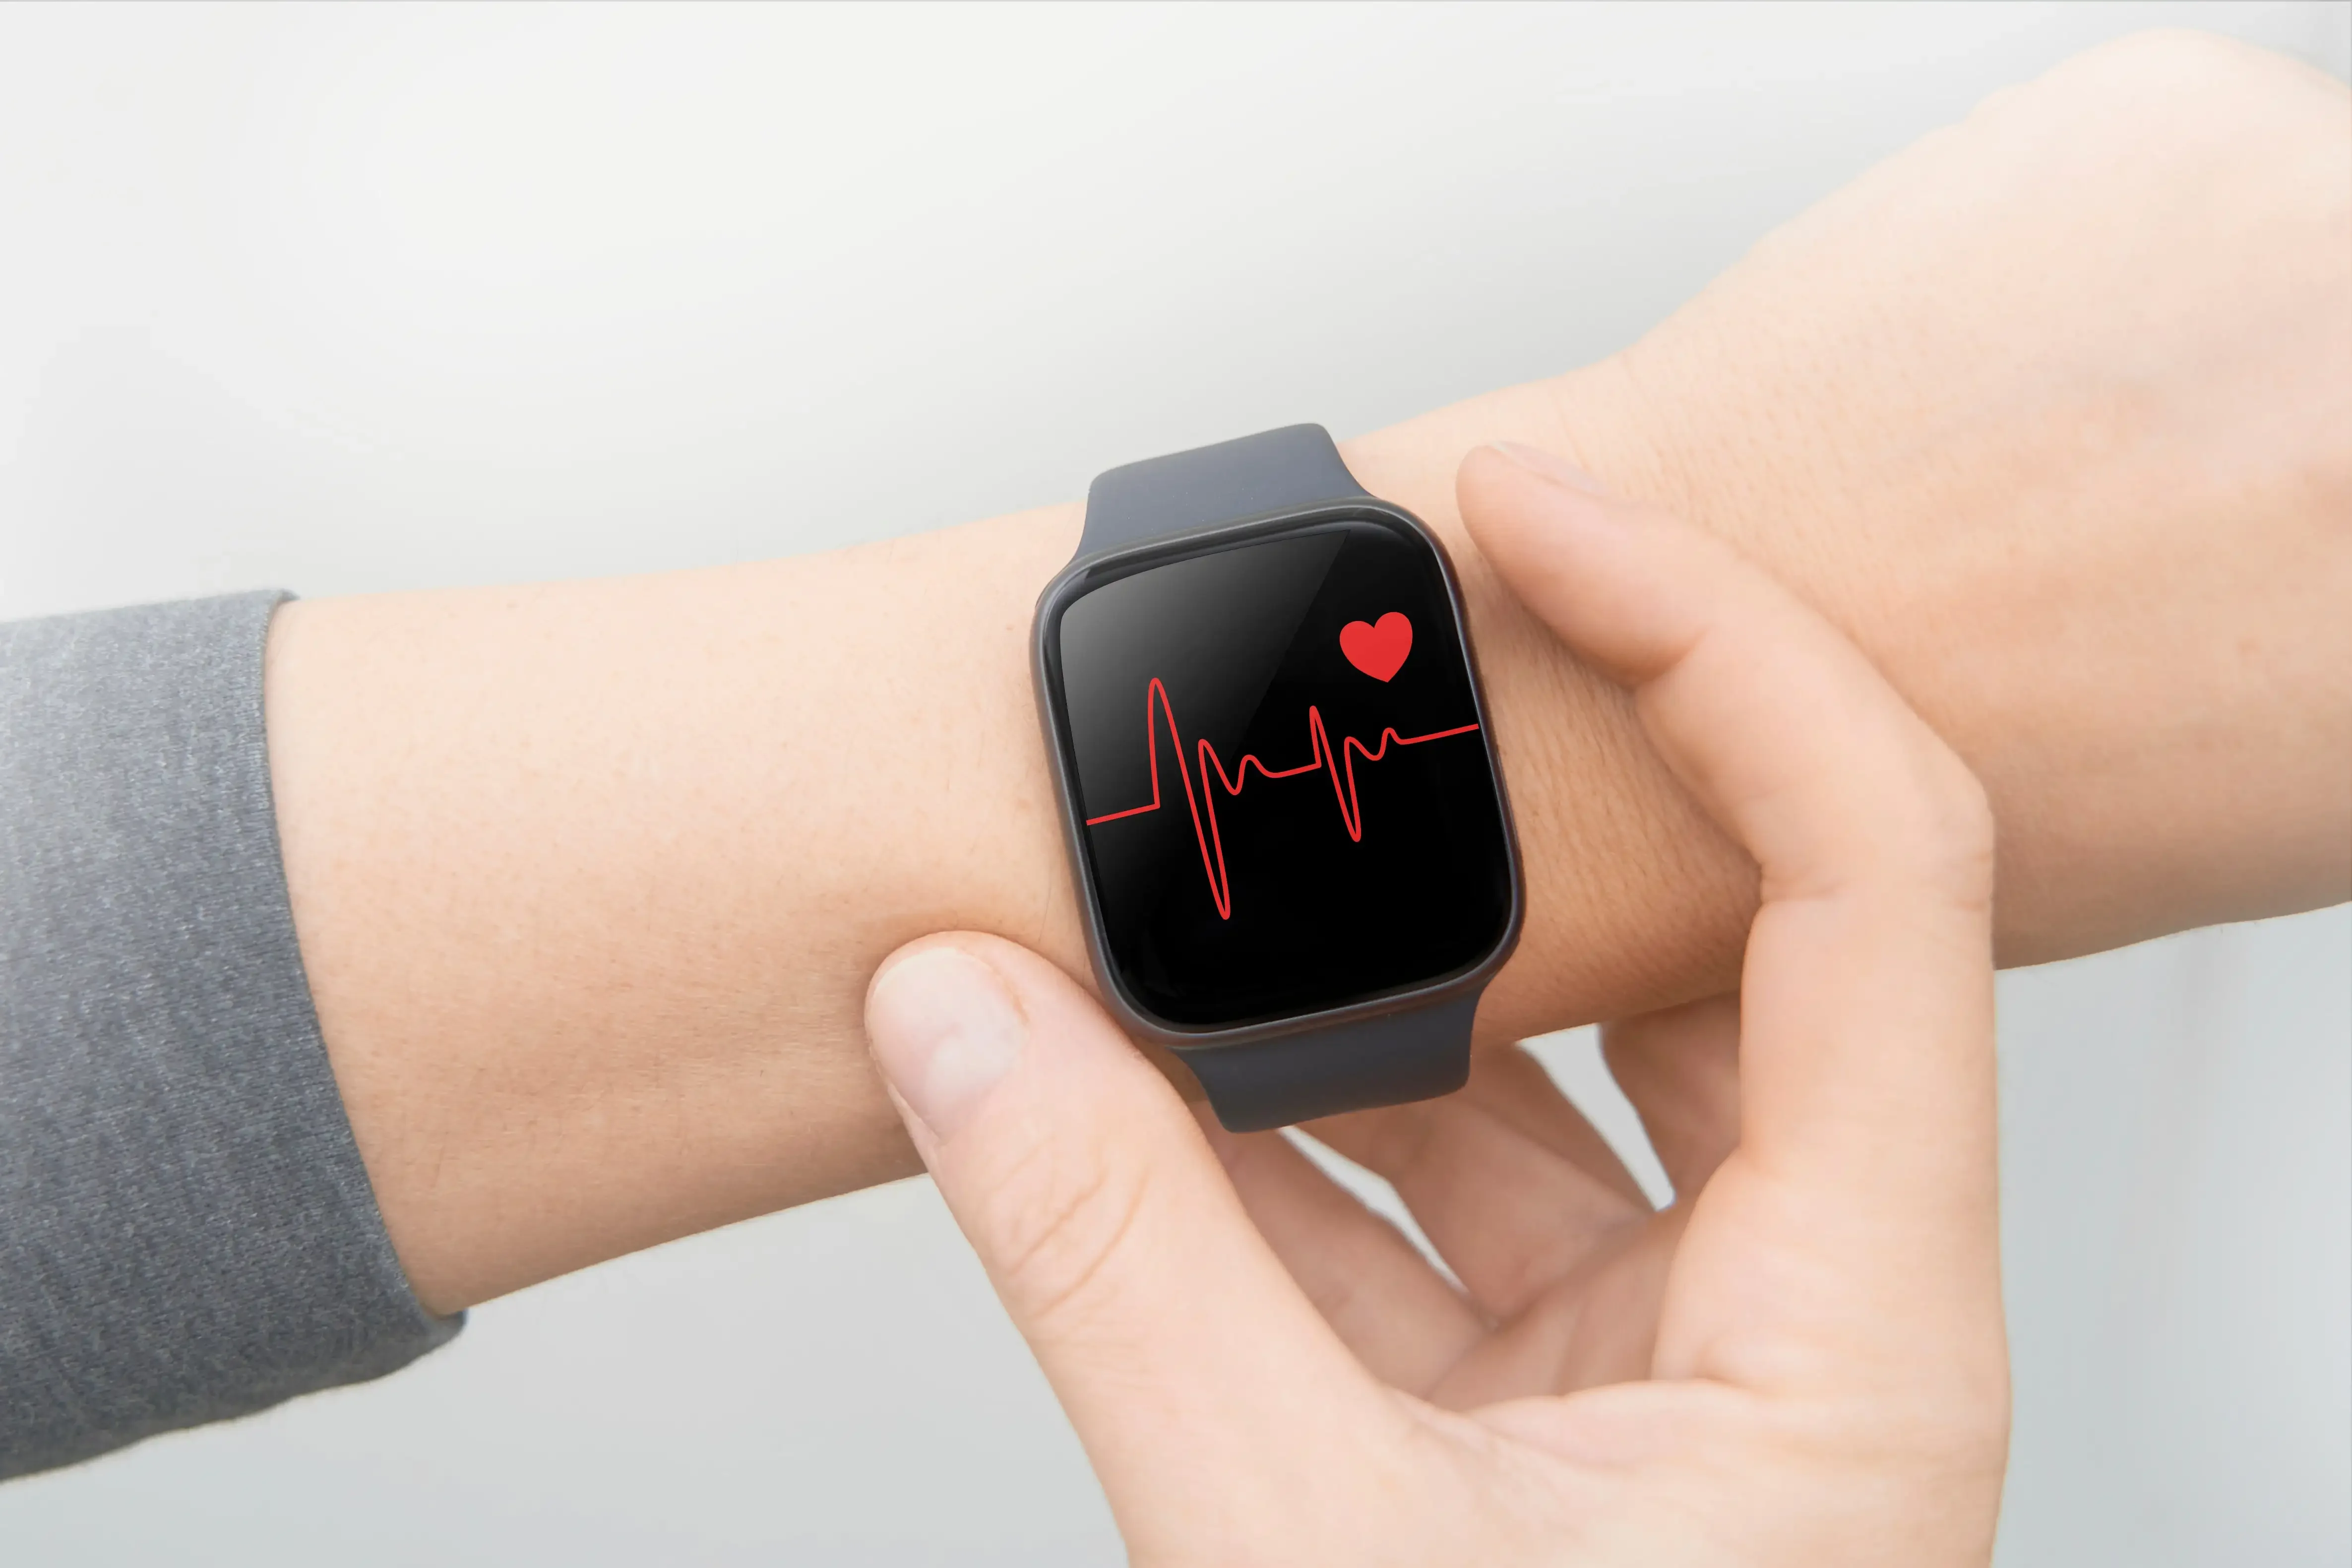 Insuficiența cardiacă și cum ar putea fi detectată şi monitorizată cu un smartwatch